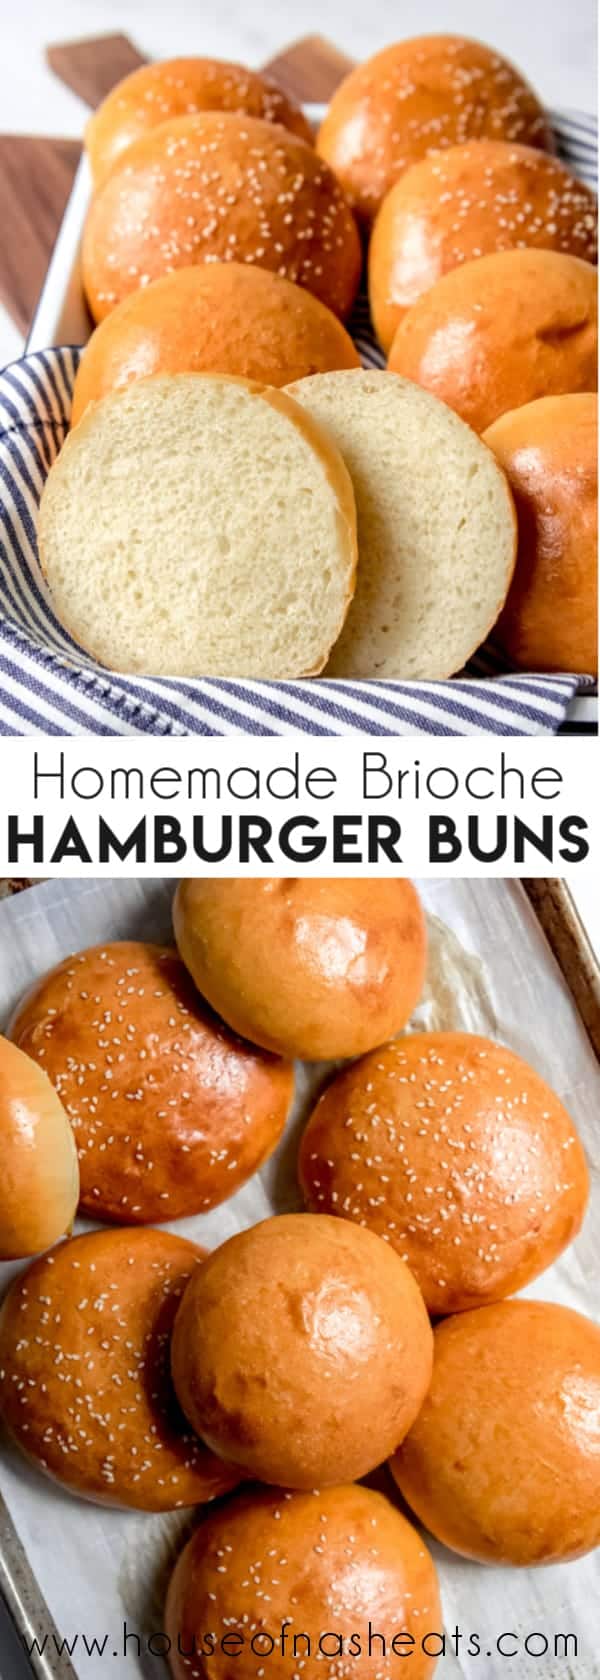 homemade brioche hamburger buns